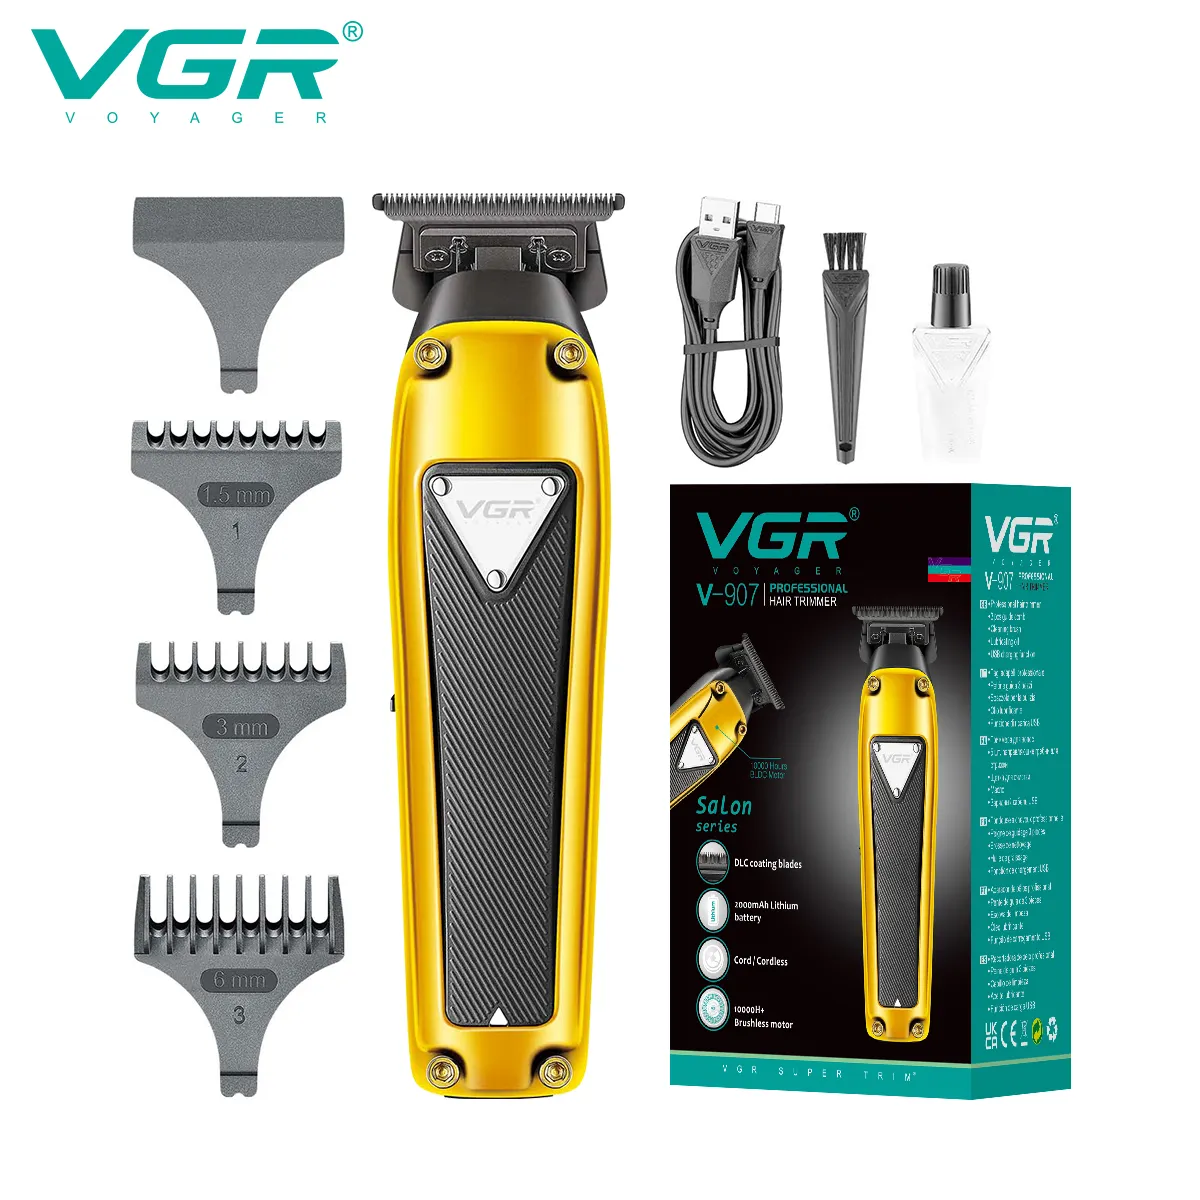 VGR V-907 profissional cerâmica lâmina cabelo aparador com motor 10000 brushless para homens